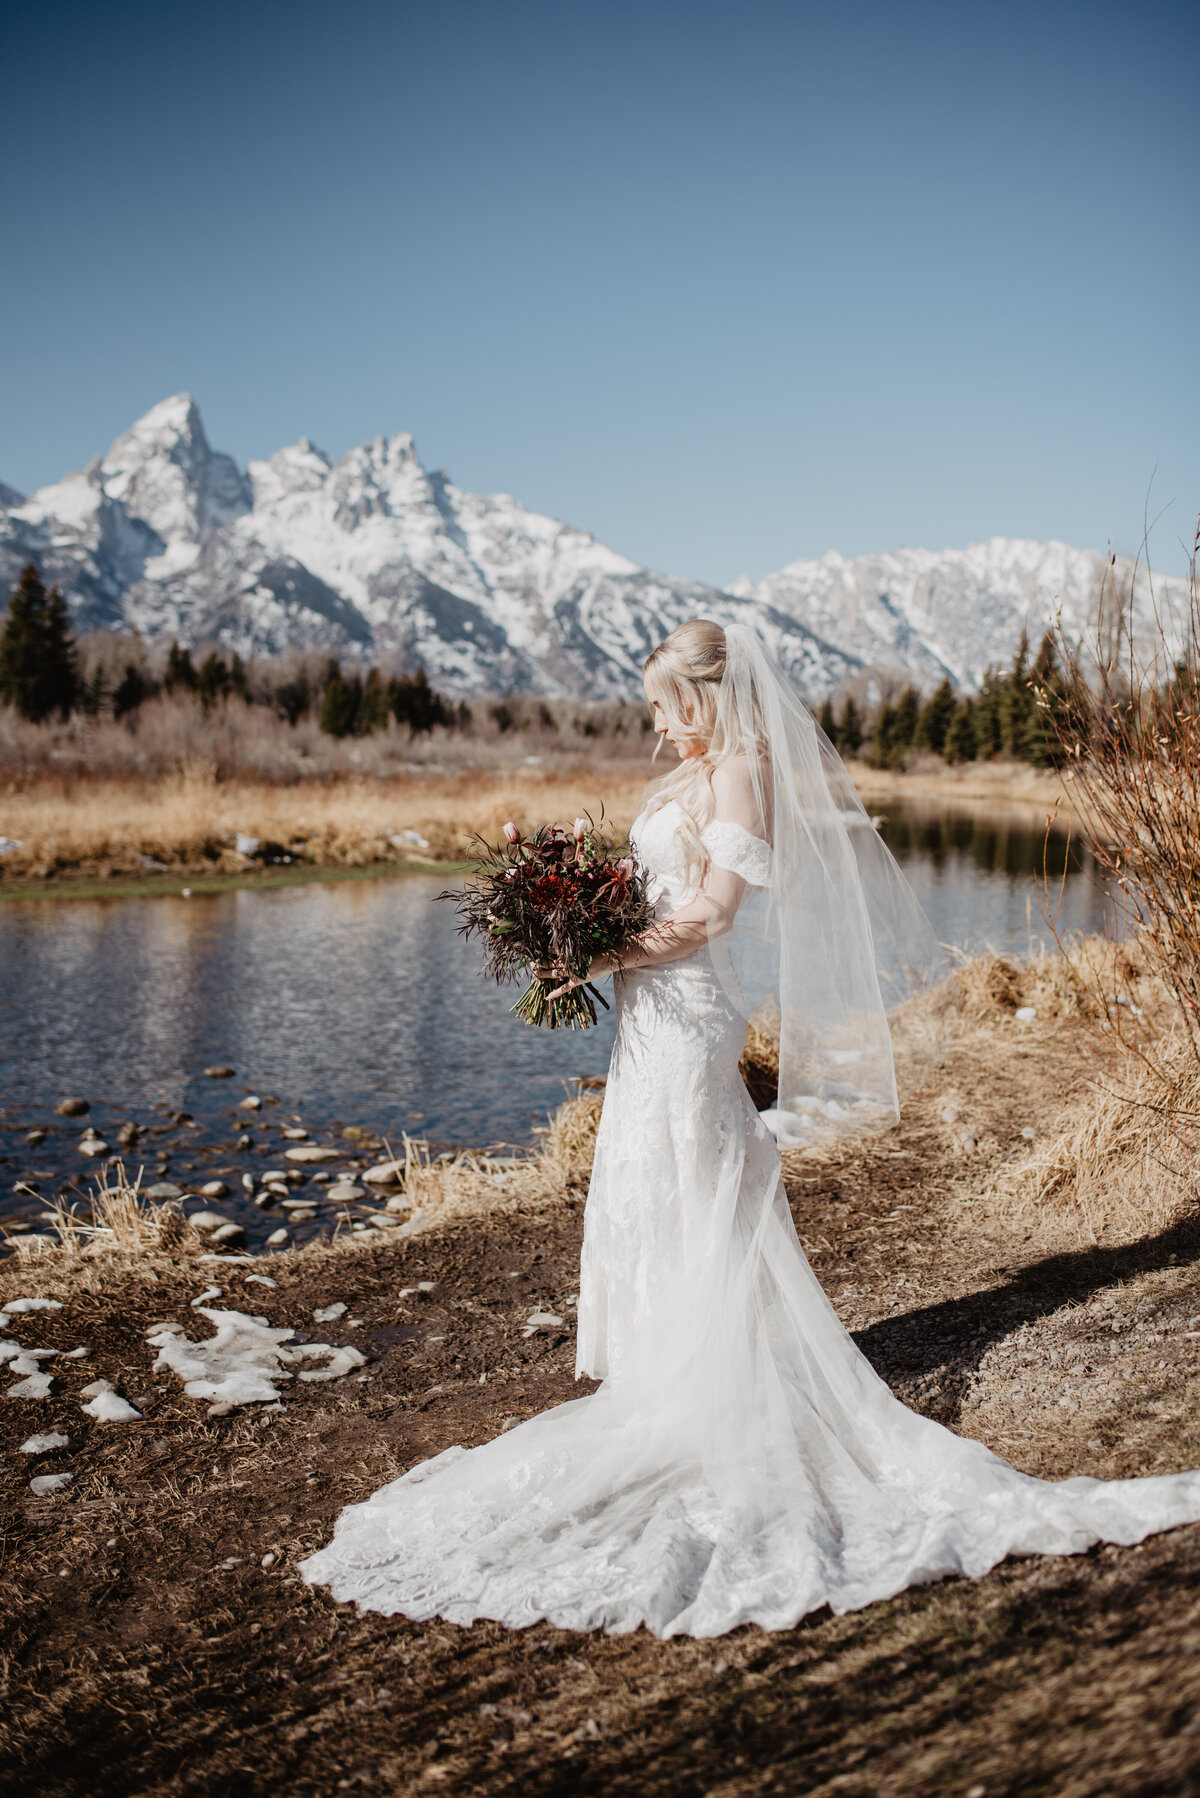 Jackson Hole Photographers capture bride wearing wedding dress holding bouquet